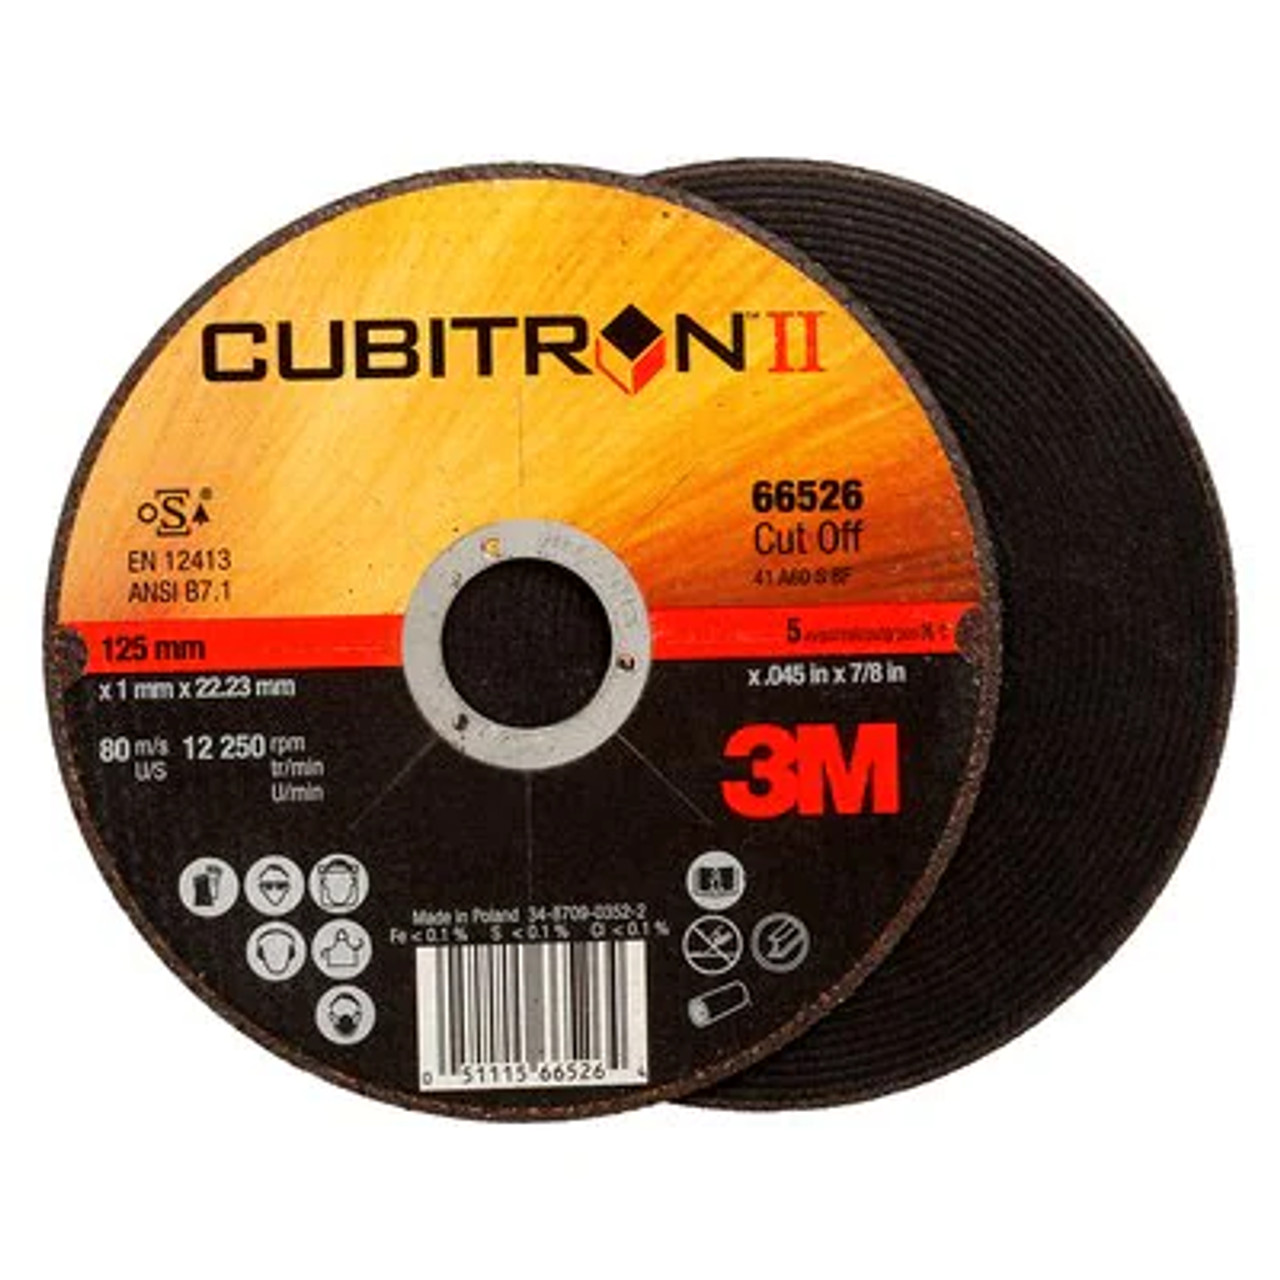 3M™ Cubitron™ II Cut-Off Wheel, 66526, Type 1, 5 in x .045 in x 7/8 in